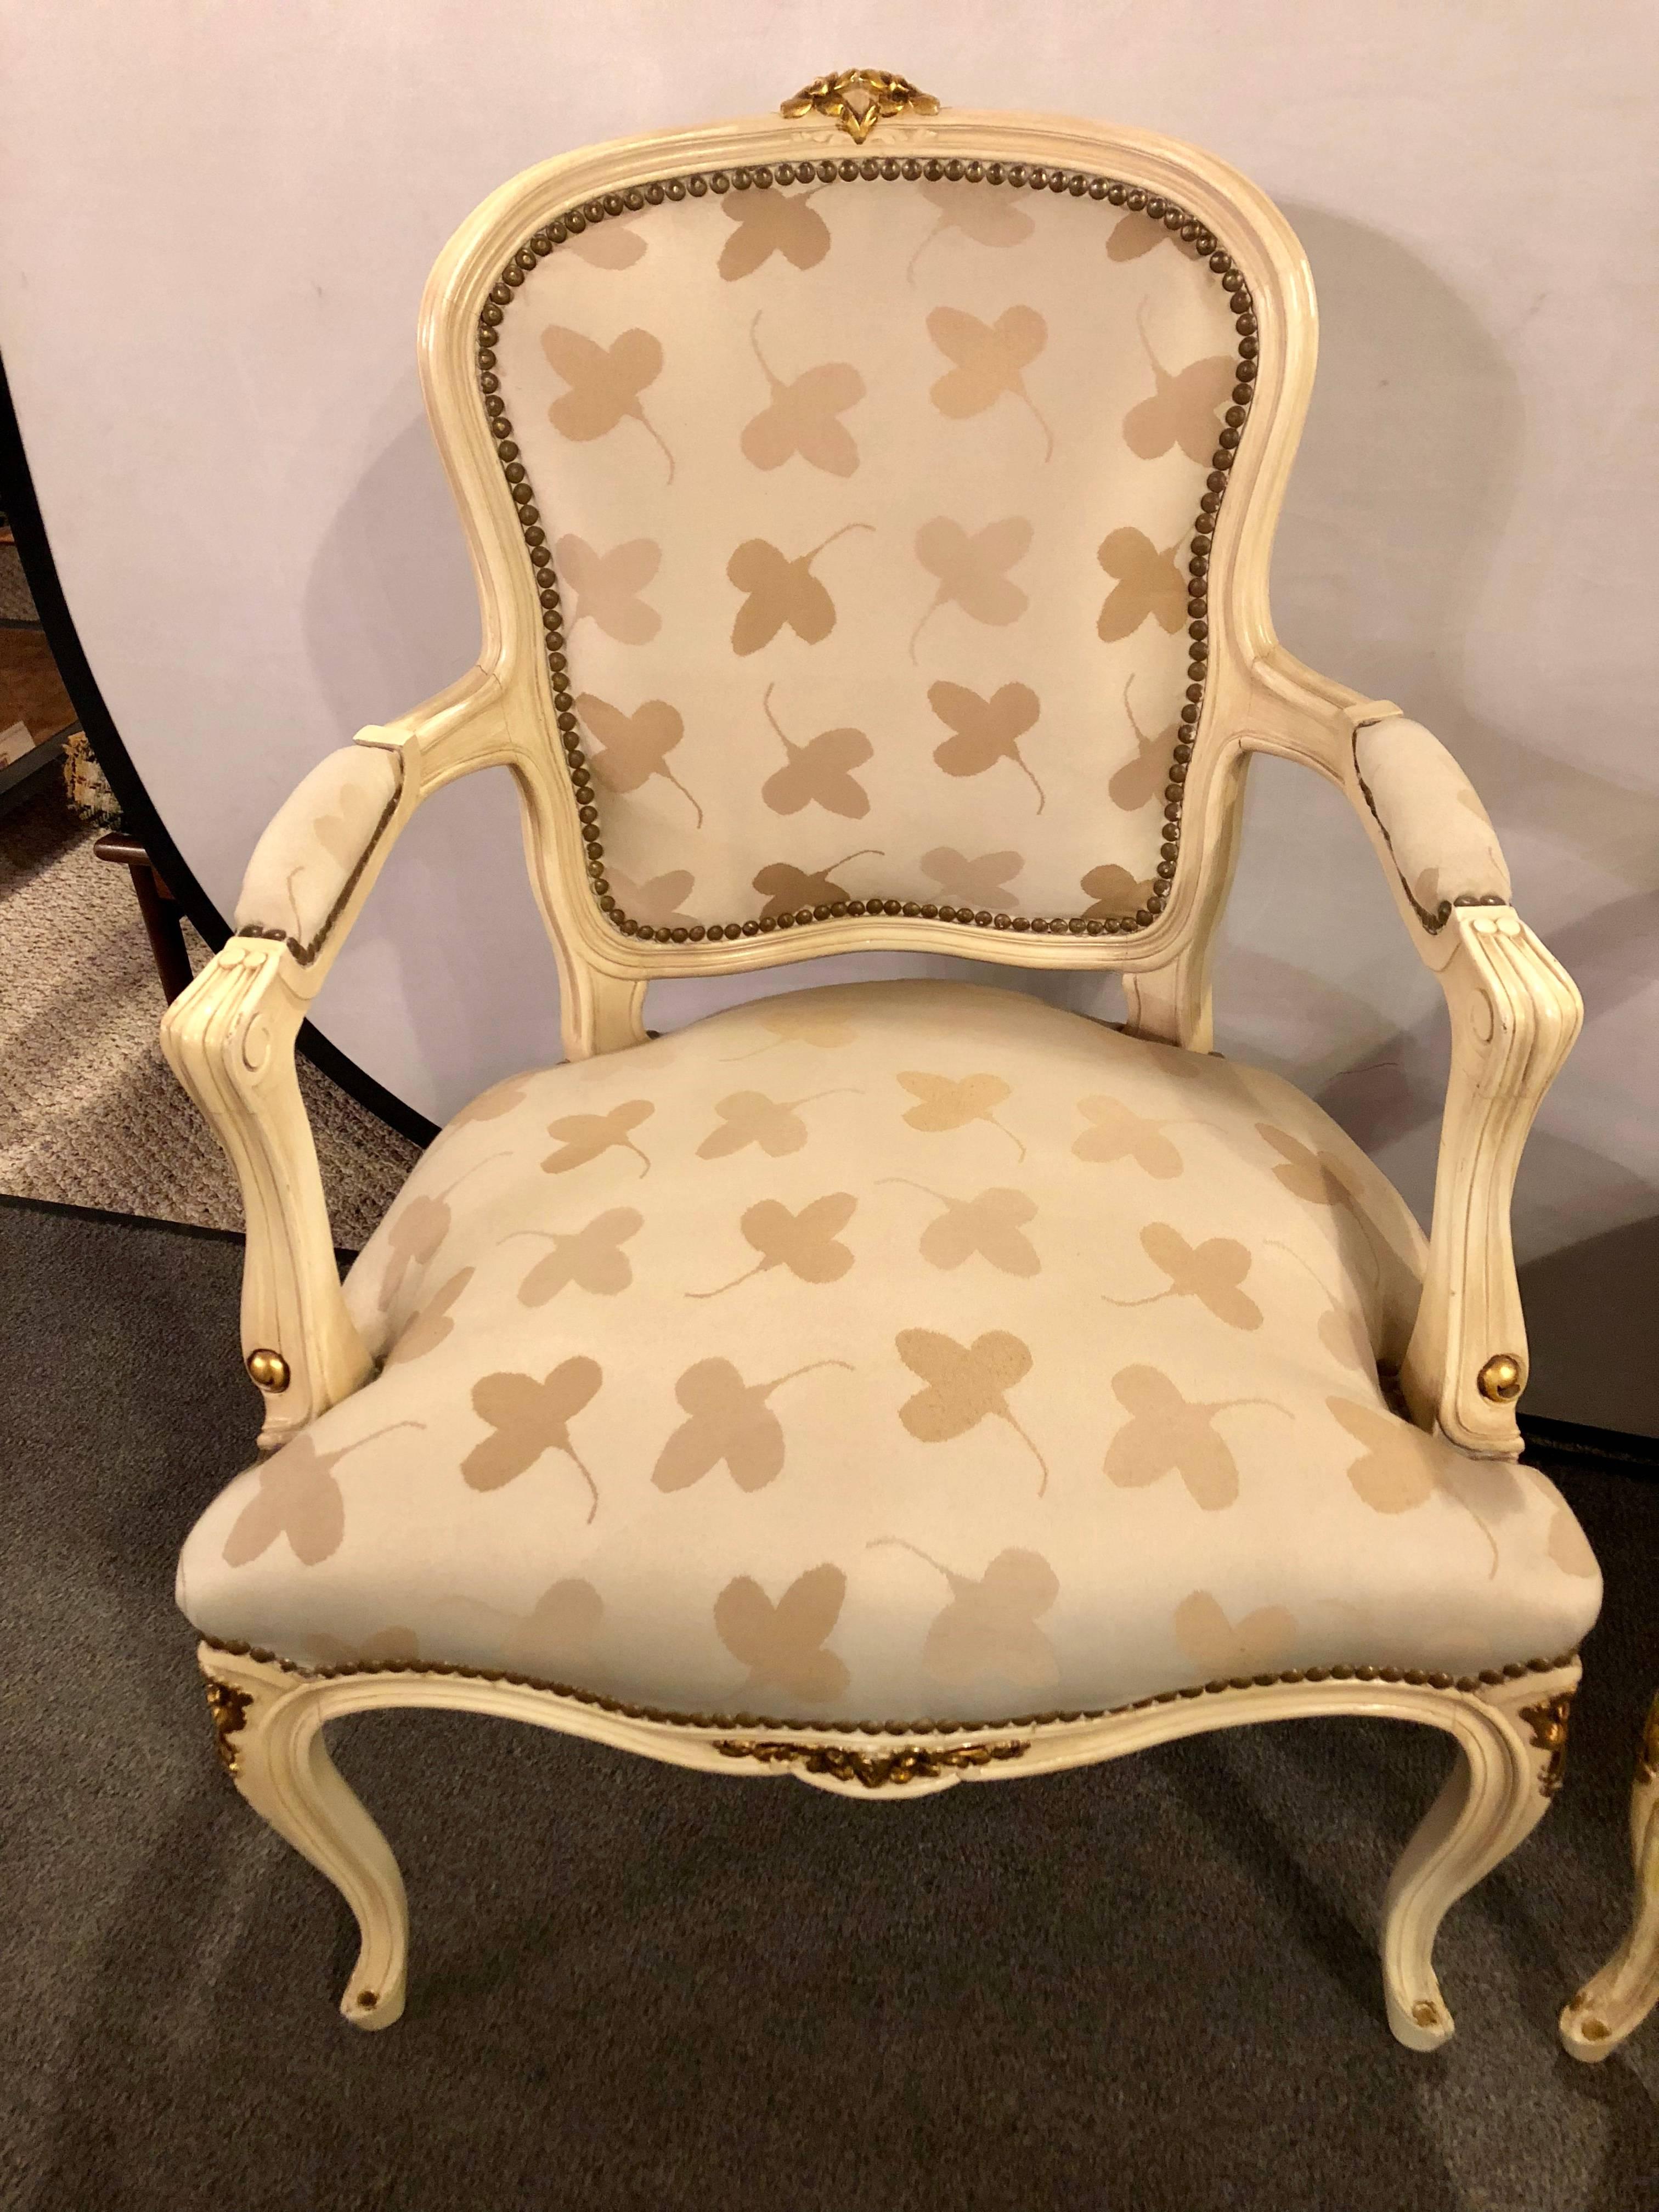 Paire de chaises bergères de style Louis XV français, décorées de dorures et de peintures d'inspiration Jansen. Ces fauteuils charmants et élégants seraient spectaculaires dans n'importe quel salon ou bureau. Tous deux sont fabriqués dans un tissu à